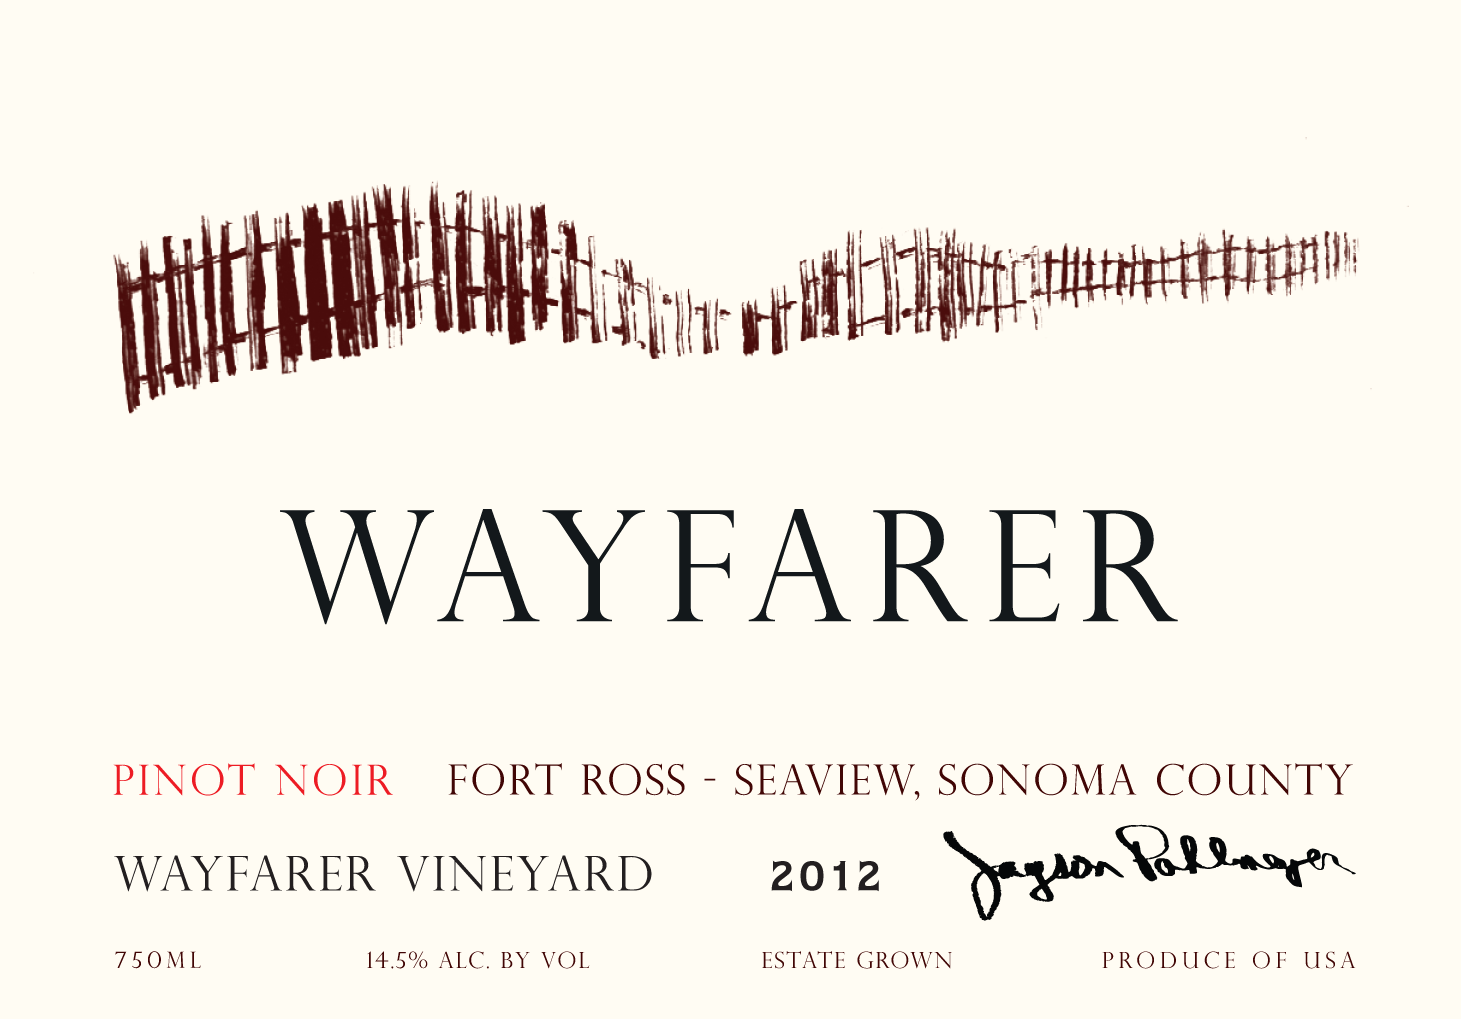 2018 Wayfarer Pinot Noir Wayfarer Vineyard Fort Ross Seaview Sonoma - click image for full description